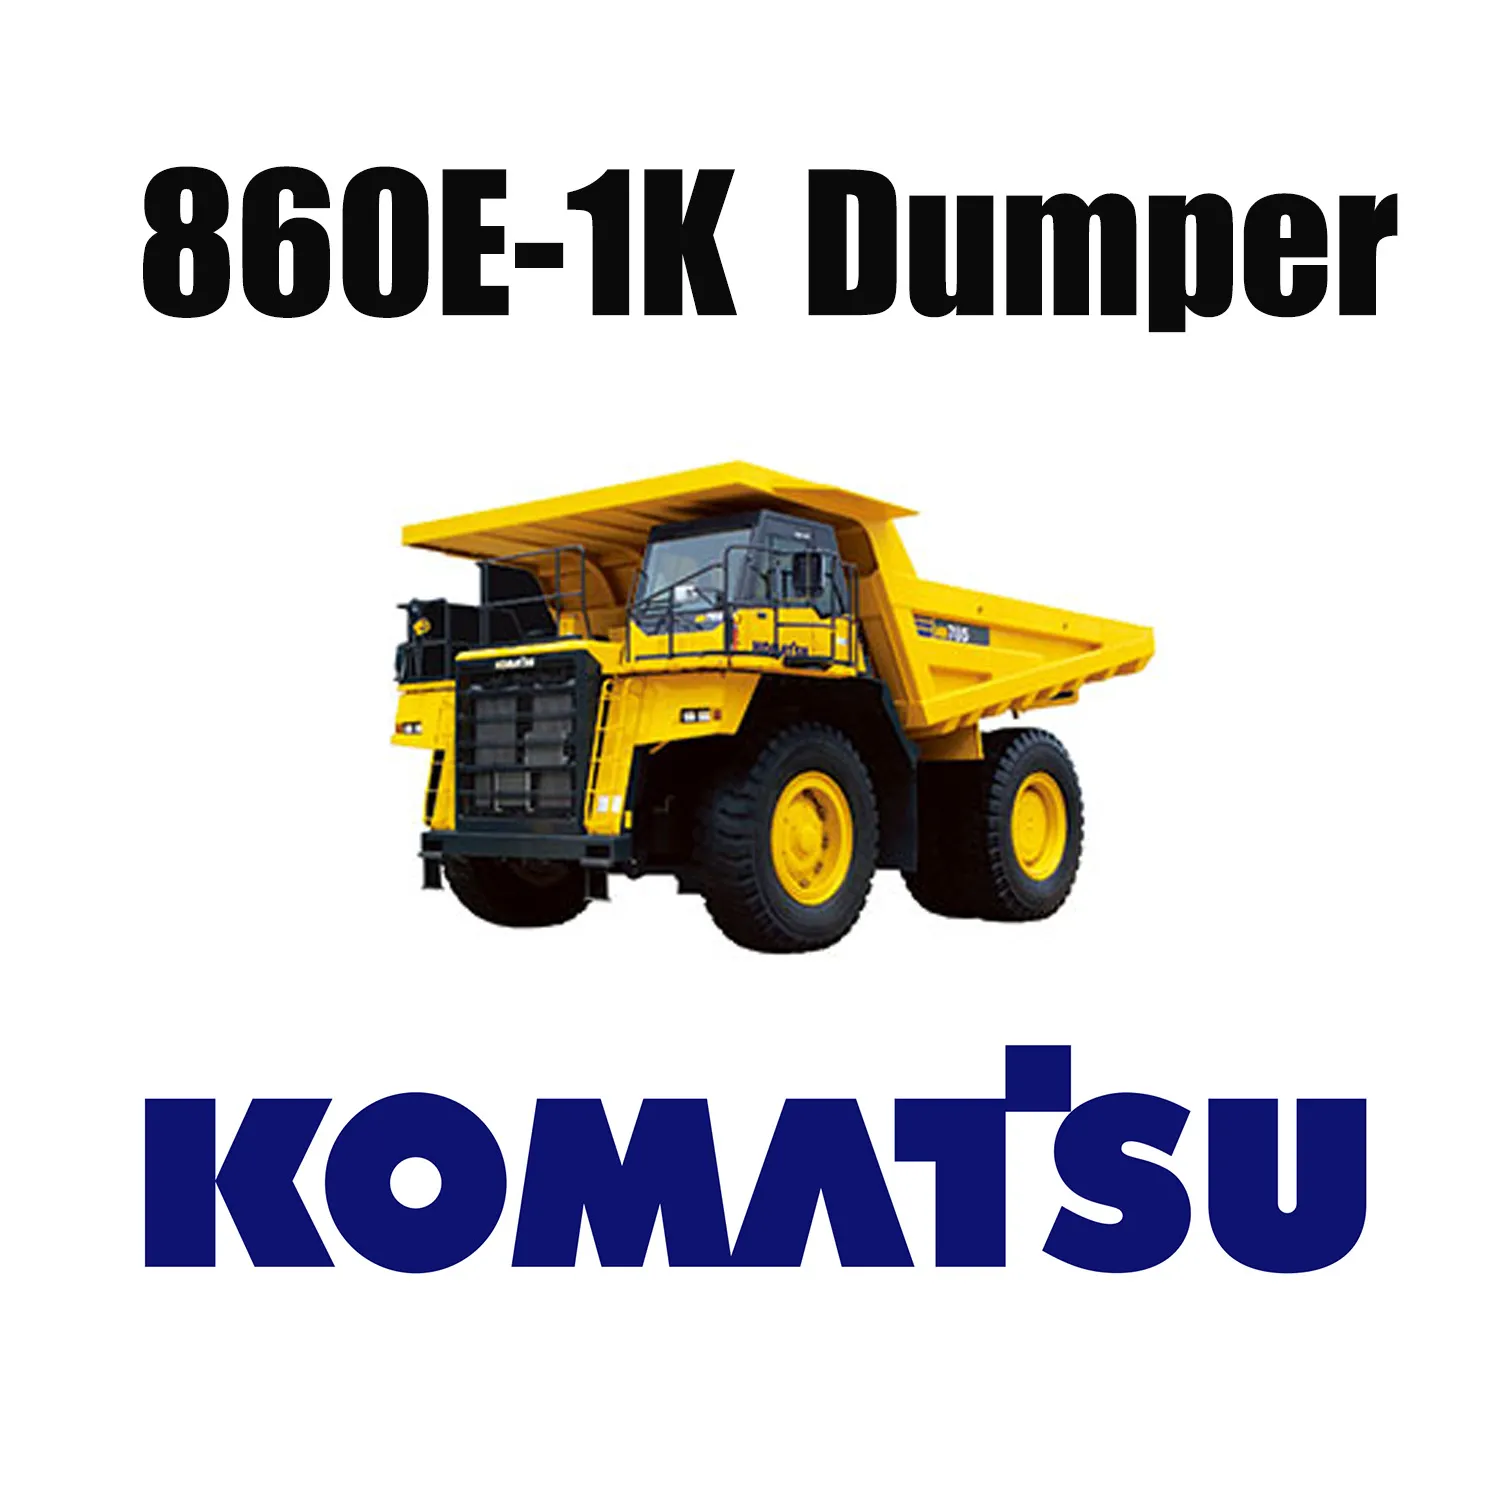 Opony terenowe Giant 50/80R57 używane w kopalni węgla dla KOMATSU 860E-1K